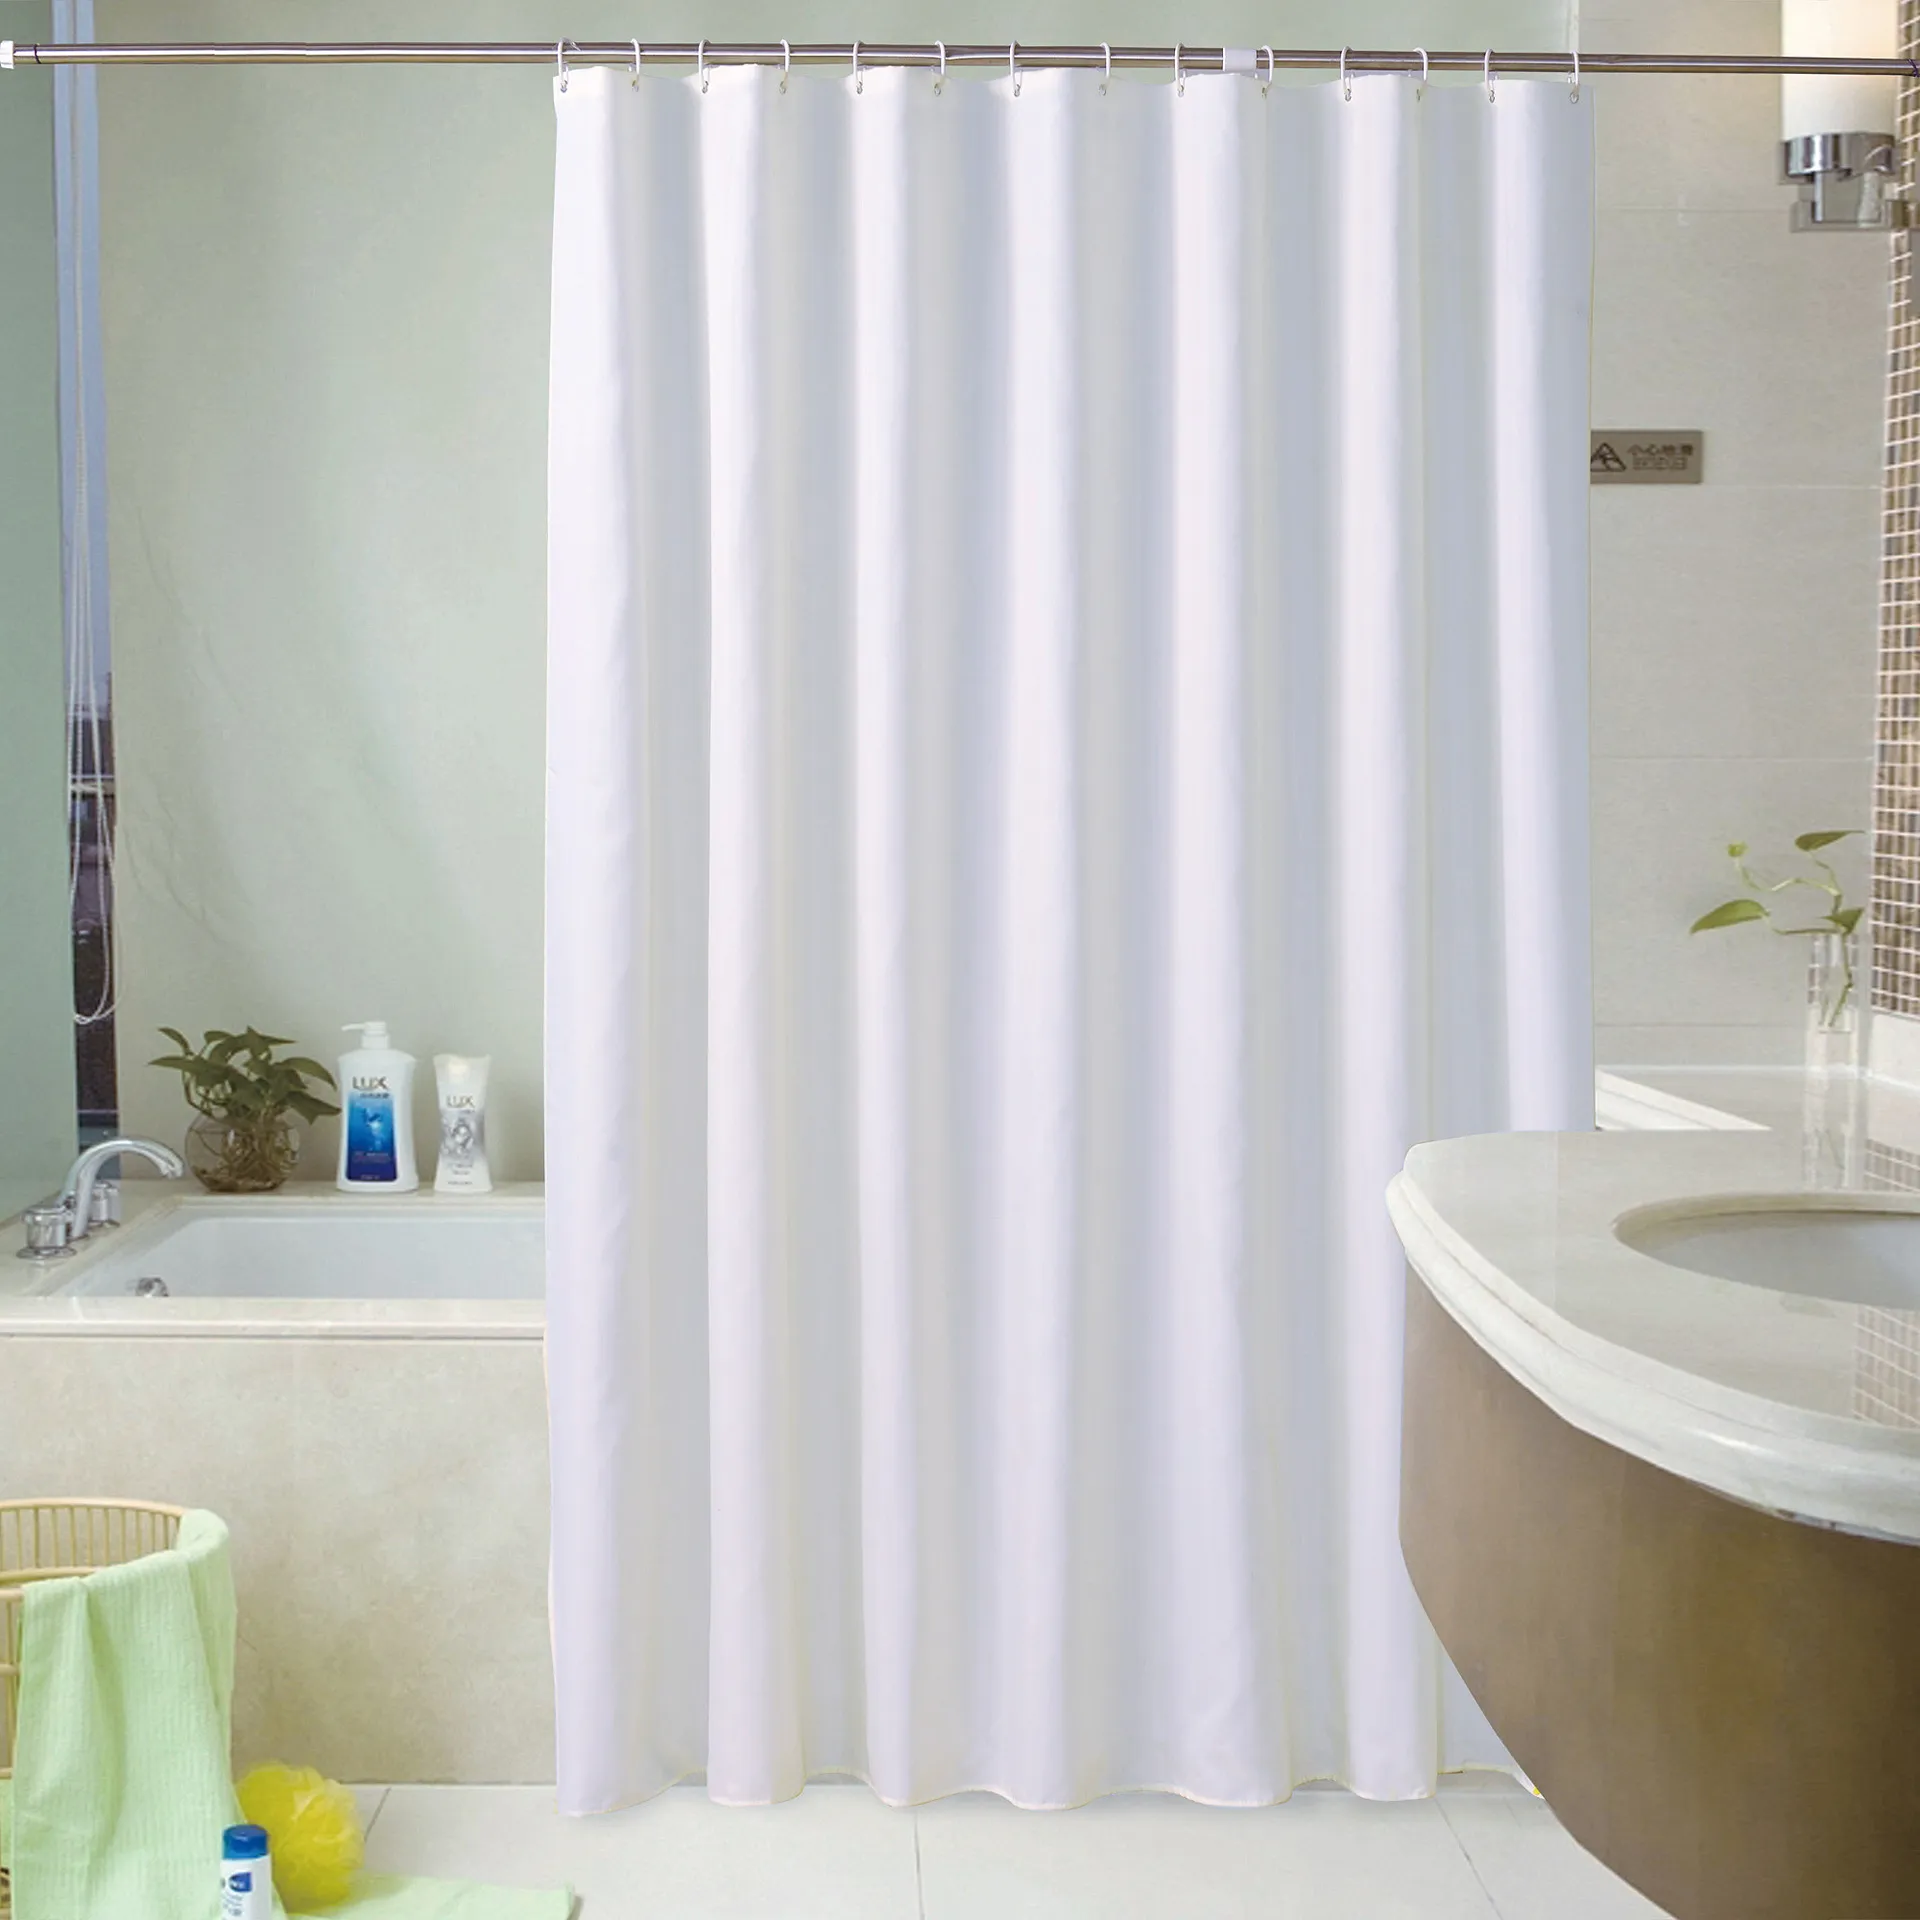 Rideau de douche uni épaissi blanc Rideau de bain en tissu polyester Rideau de douche imperméable pour hôtel